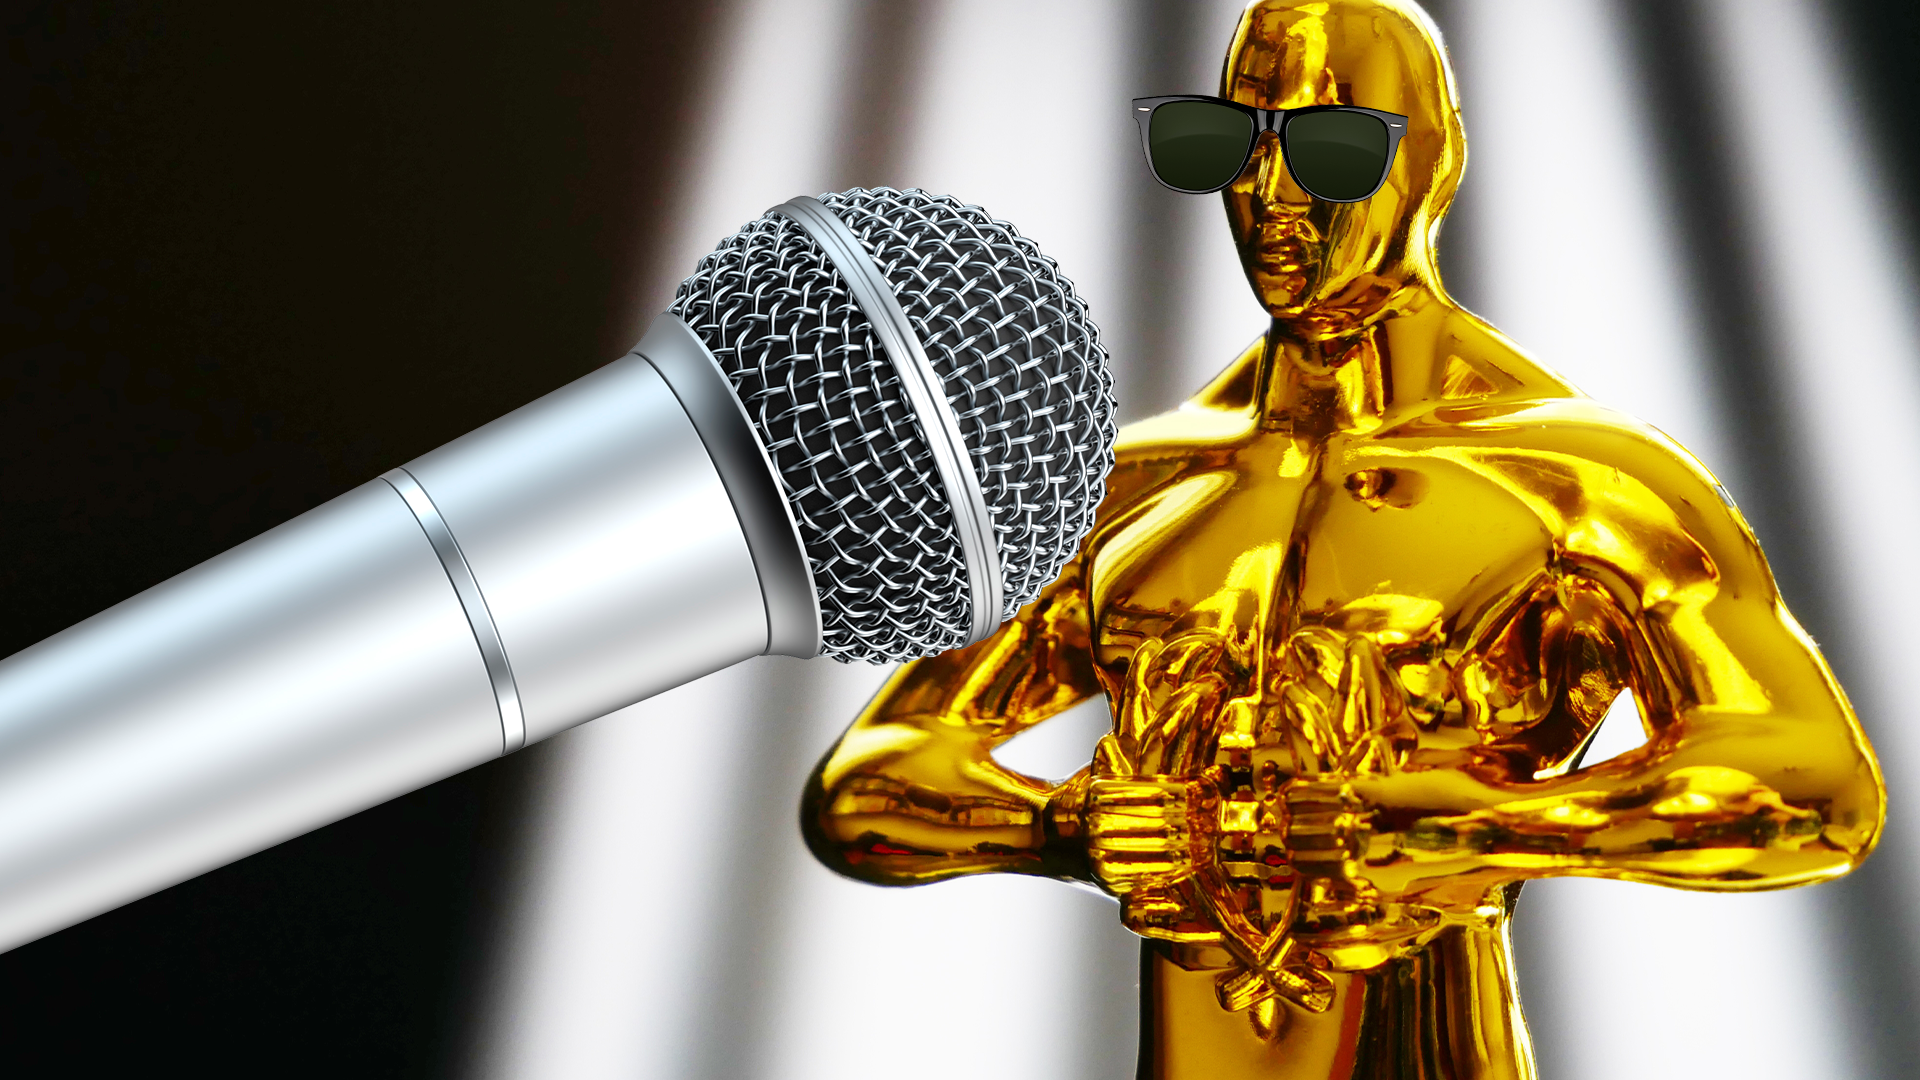 An Oscar and a mic